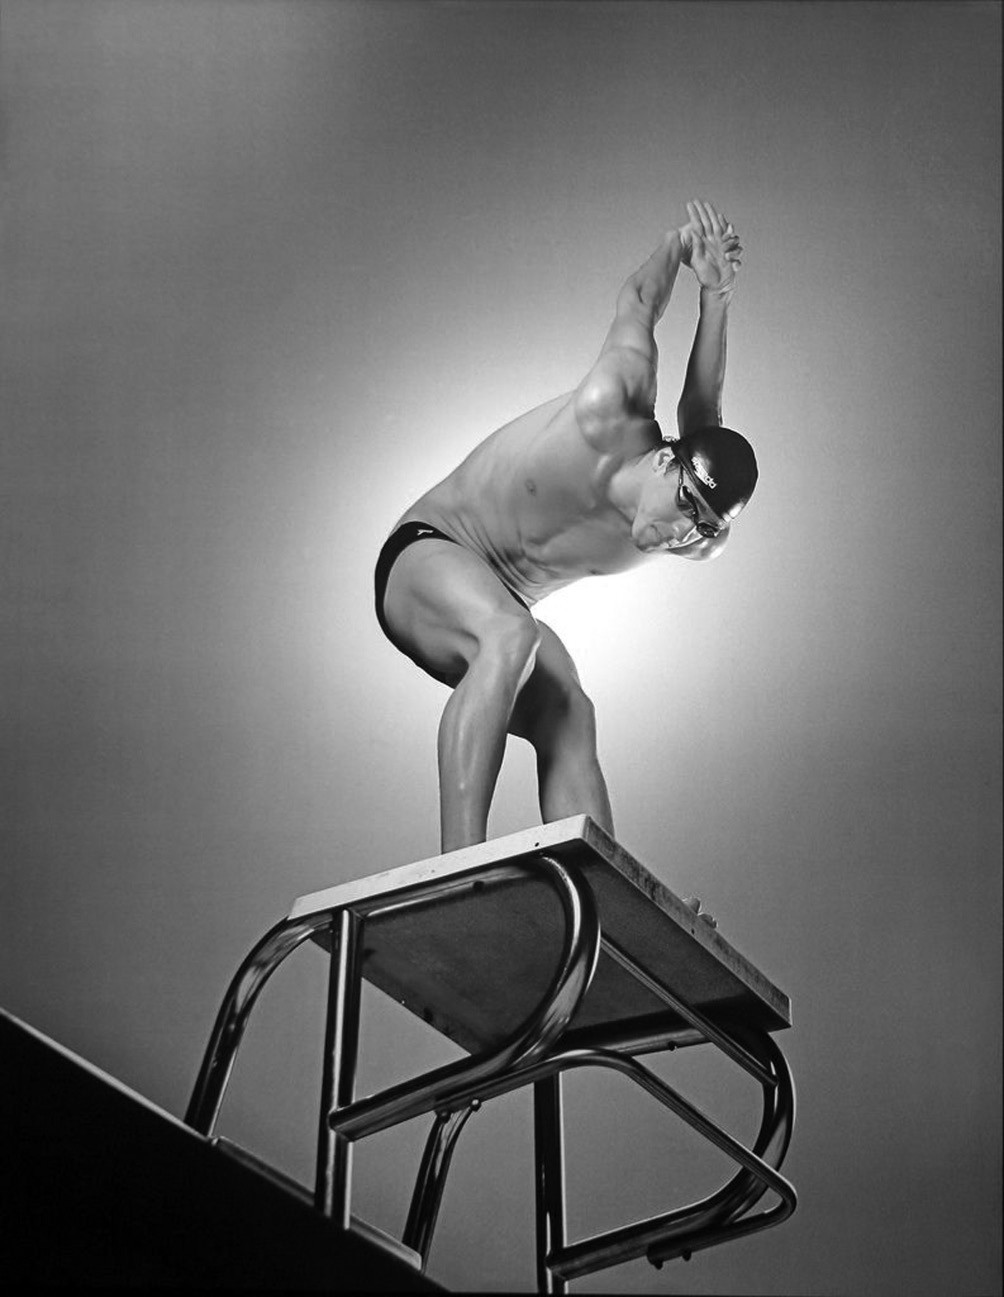 Das Foto von Michael Phelps nahm der bekannte Sportfotograf Walter Iooss 2010 auf. Er schreibt, dass für die Aufnahme das Wasser aus dem Schwimmbecken gelassen werden musste. Gesprungen ist Phelps hoffentlich nicht.